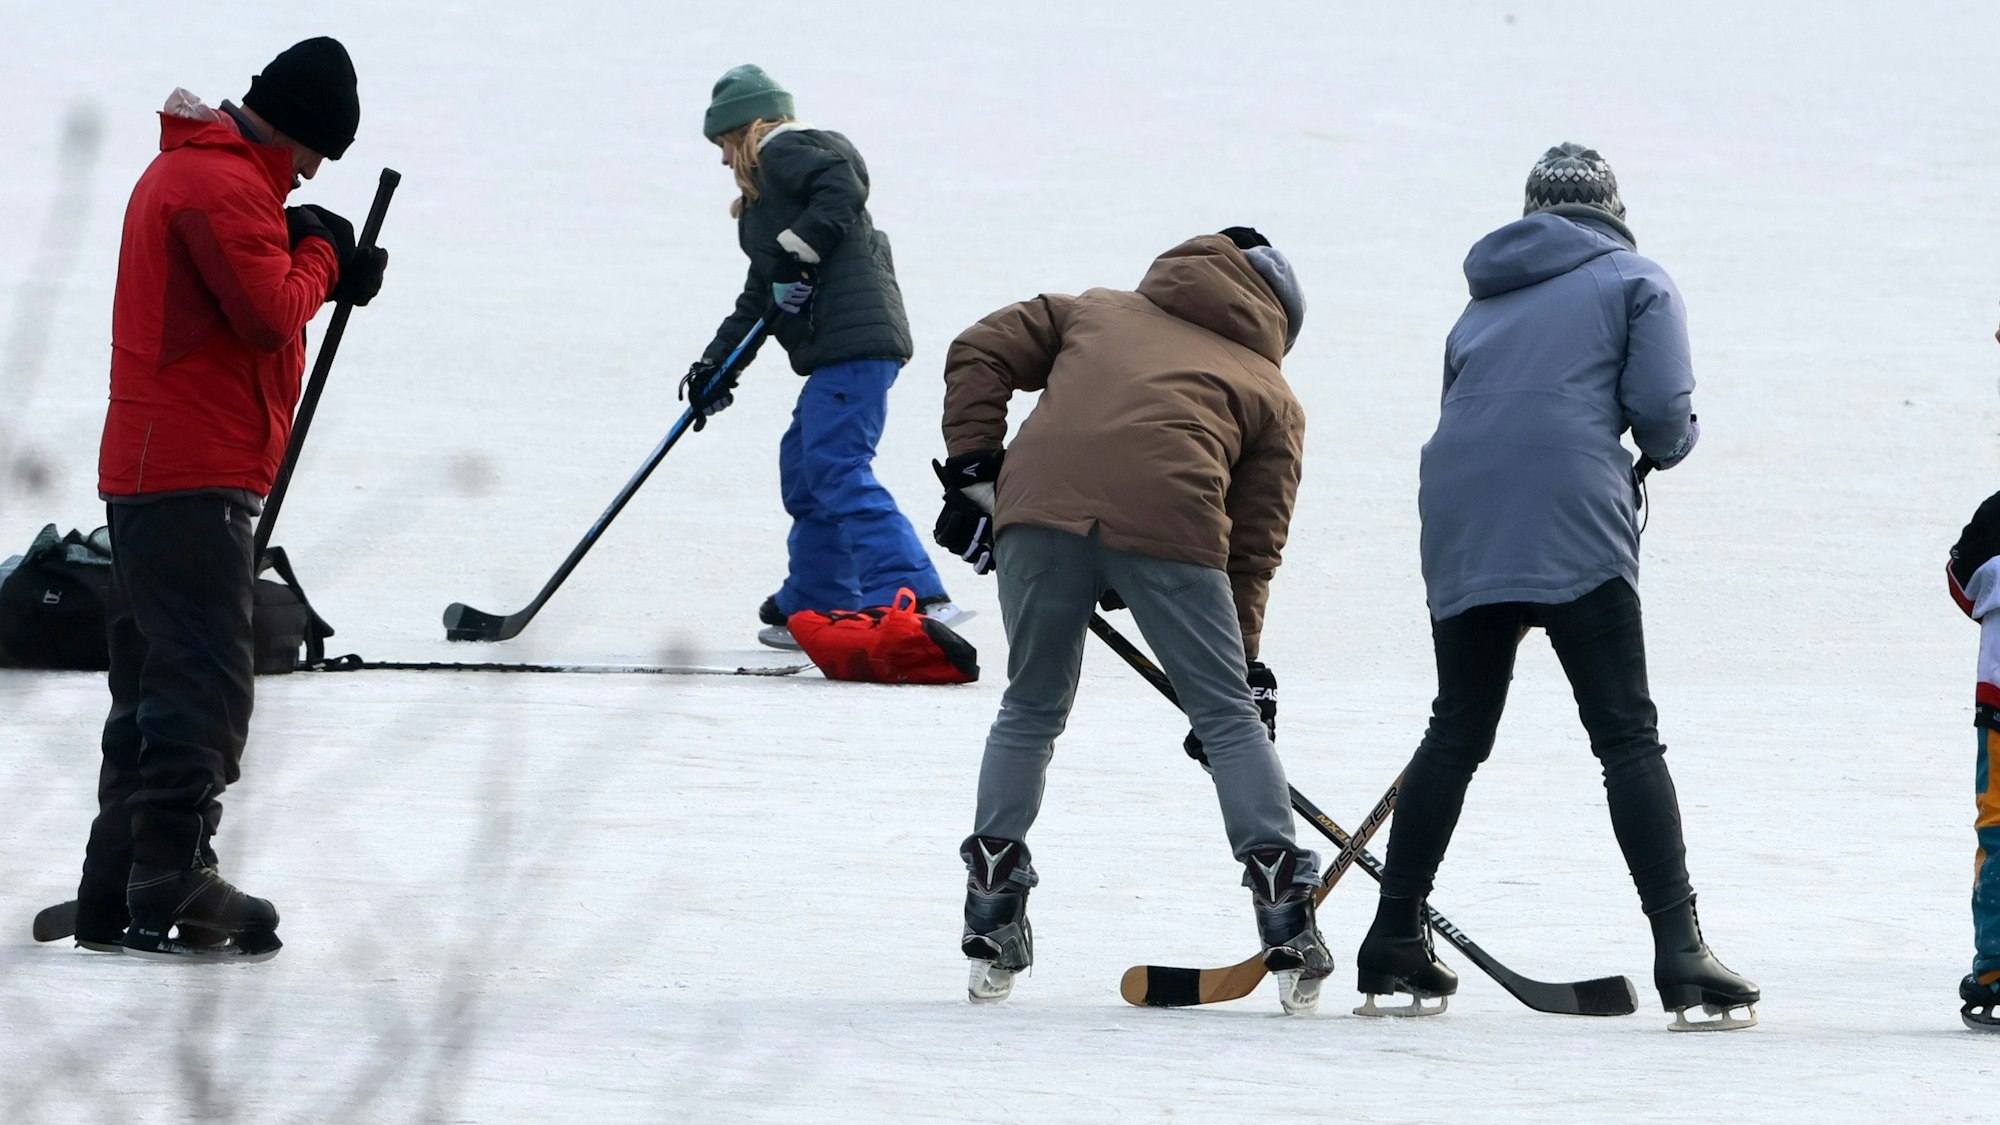 Eisläufer auf dem Decksteiner Weiher, bitte erkennbare personen pixeln17.12.2022, Bild: Herbert Bucco

